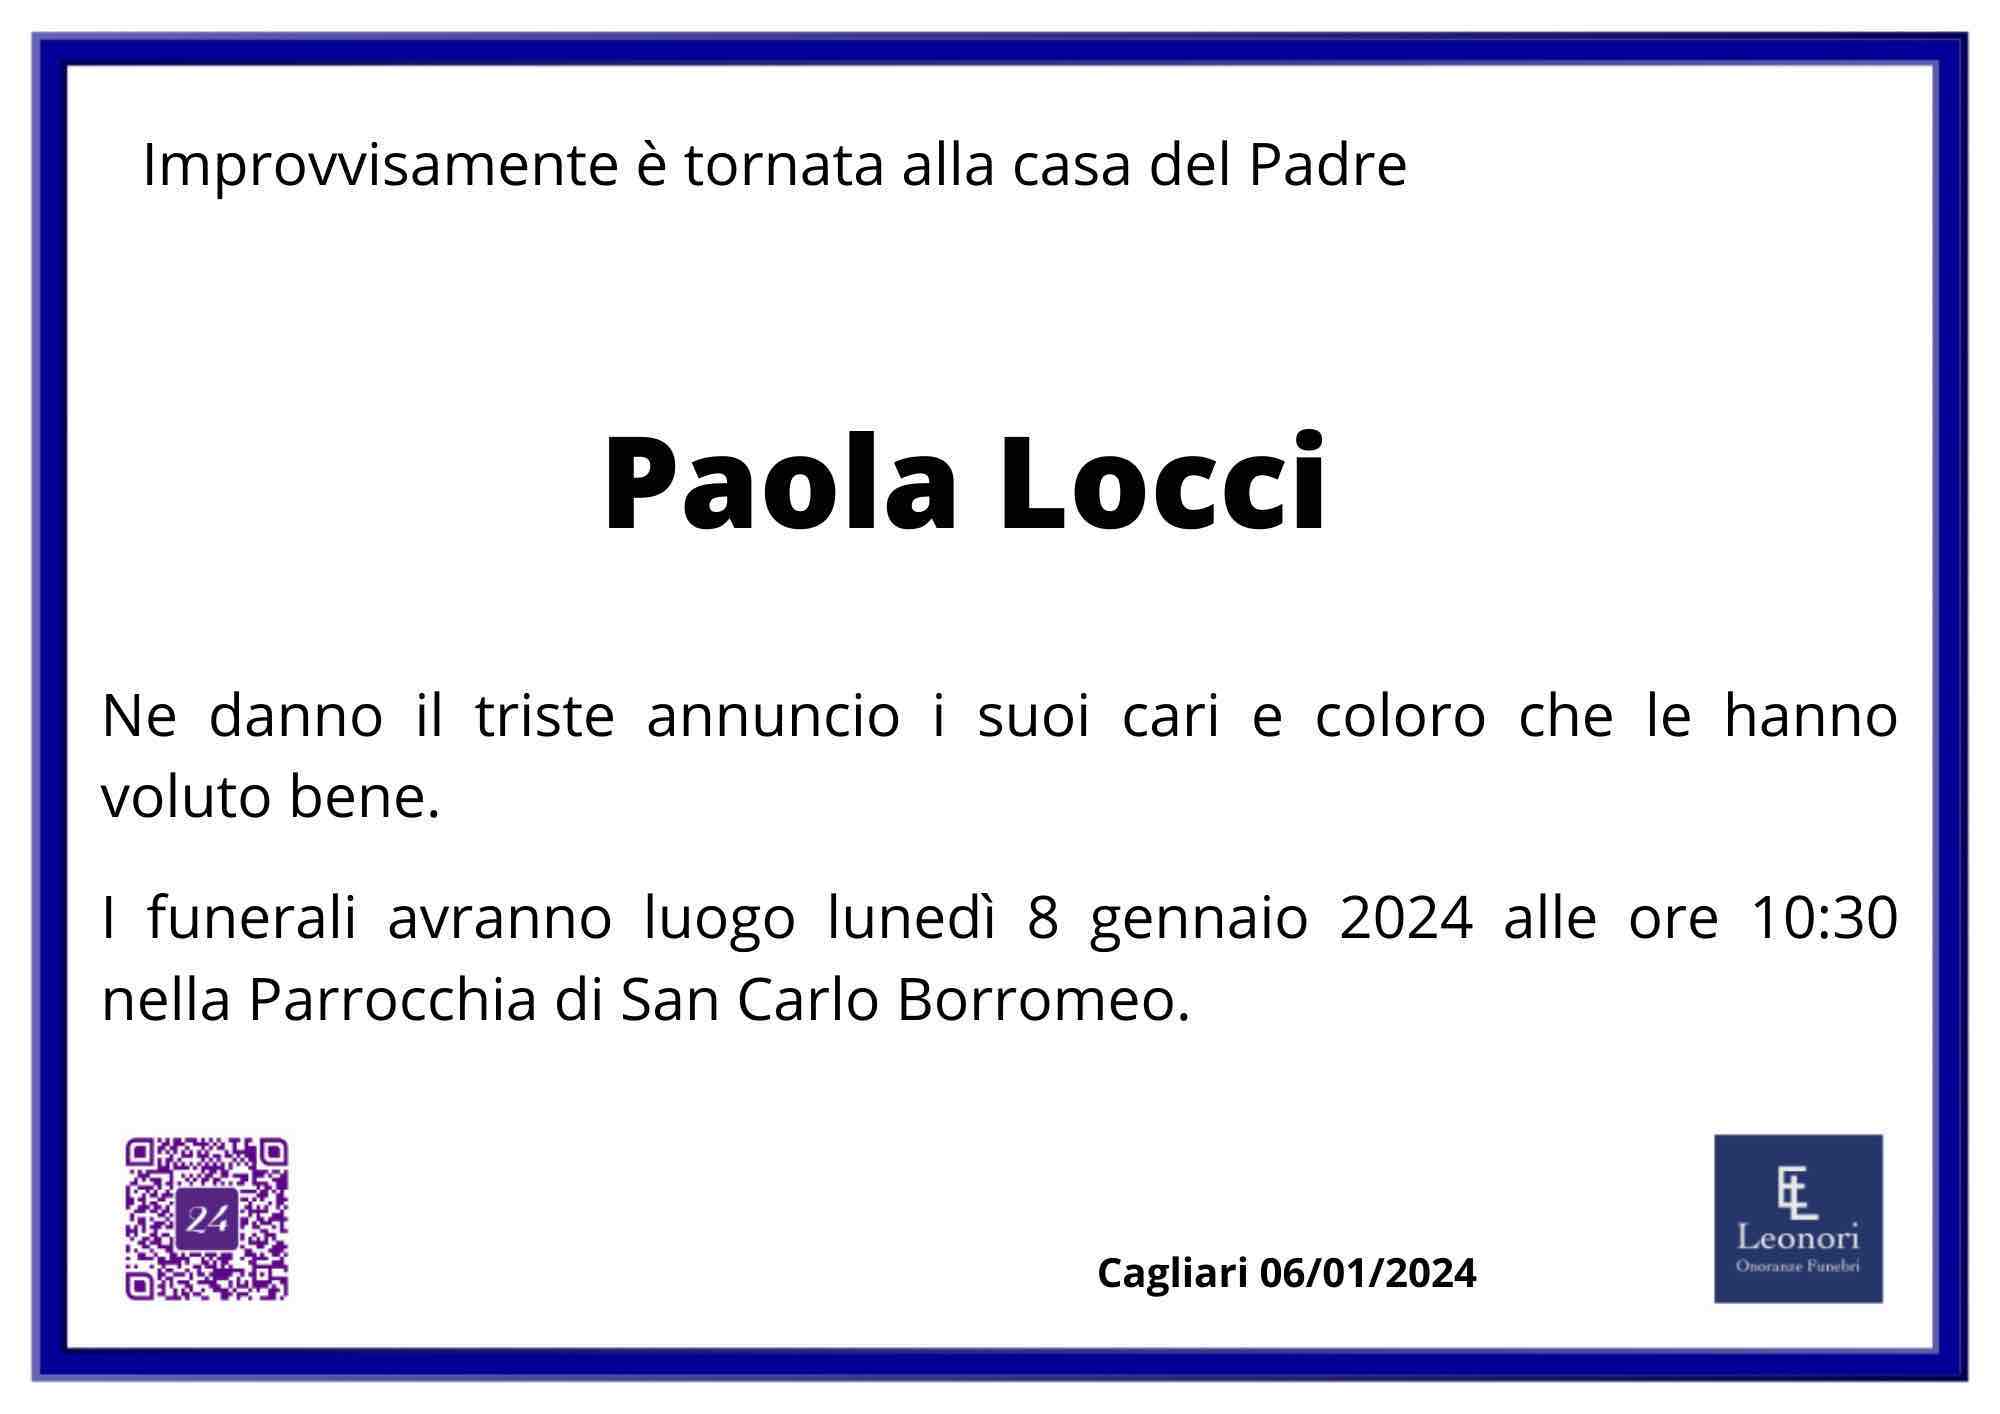 Paola Locci